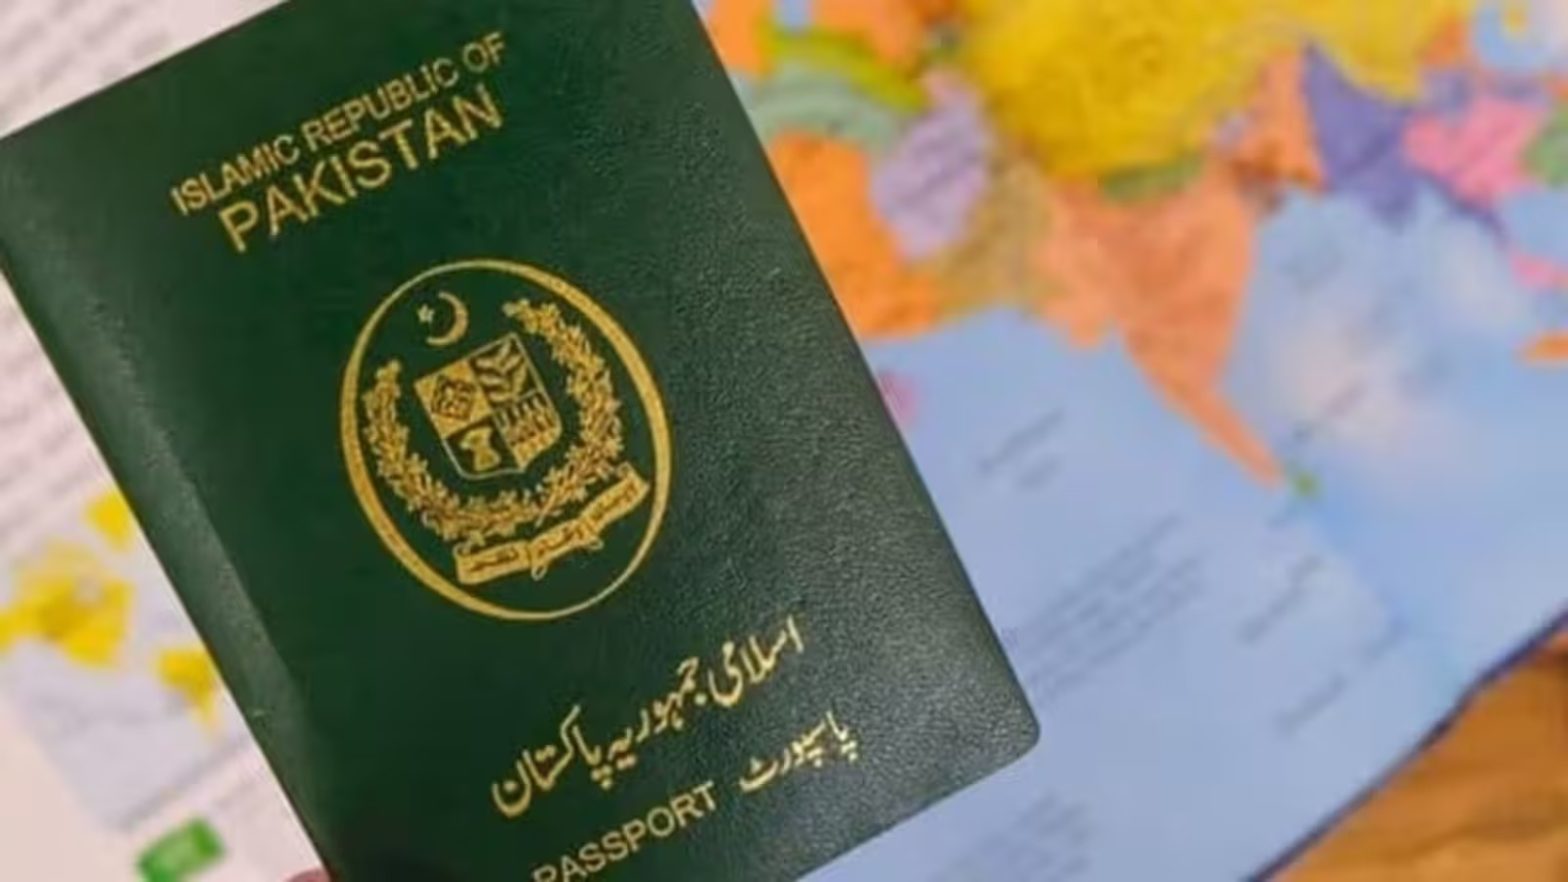 कंगाल पाकिस्तान में अब लेमिनेशन पेपर की कमी, लाखों पासपोर्ट्स की रुकी प्रिंटिग